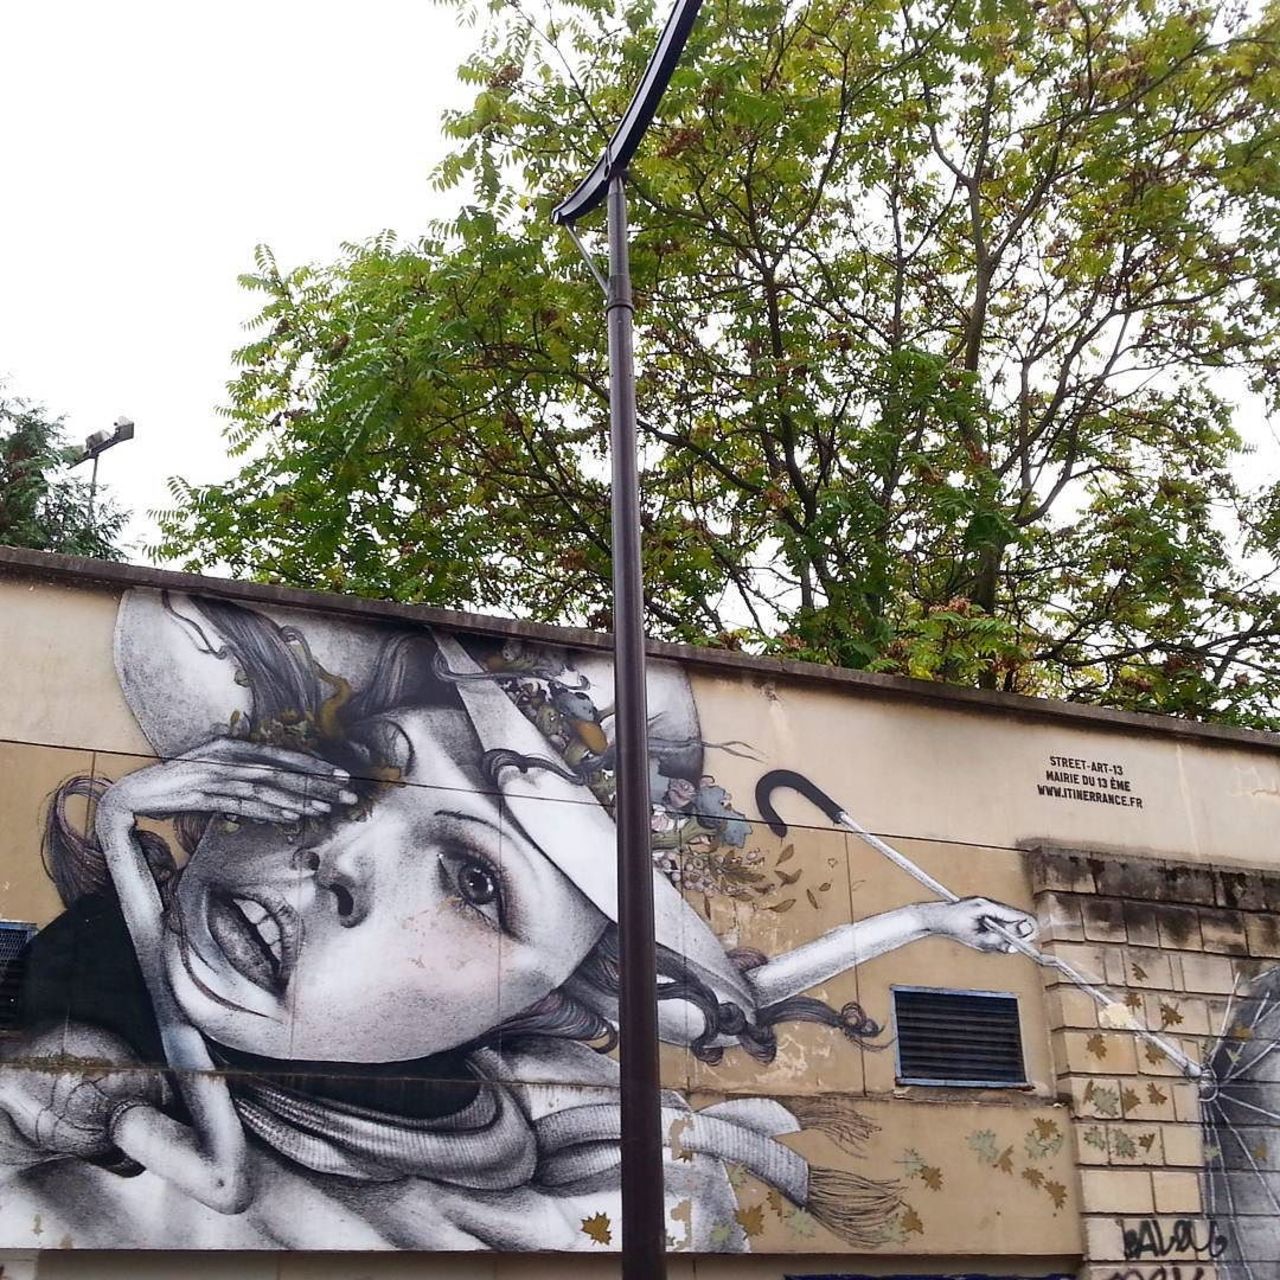 circumjacent_fr: #Paris #graffiti photo by fotoflaneuse http://ift.tt/1RpdSMV #StreetArt https://t.co/HSaq07h4Rs